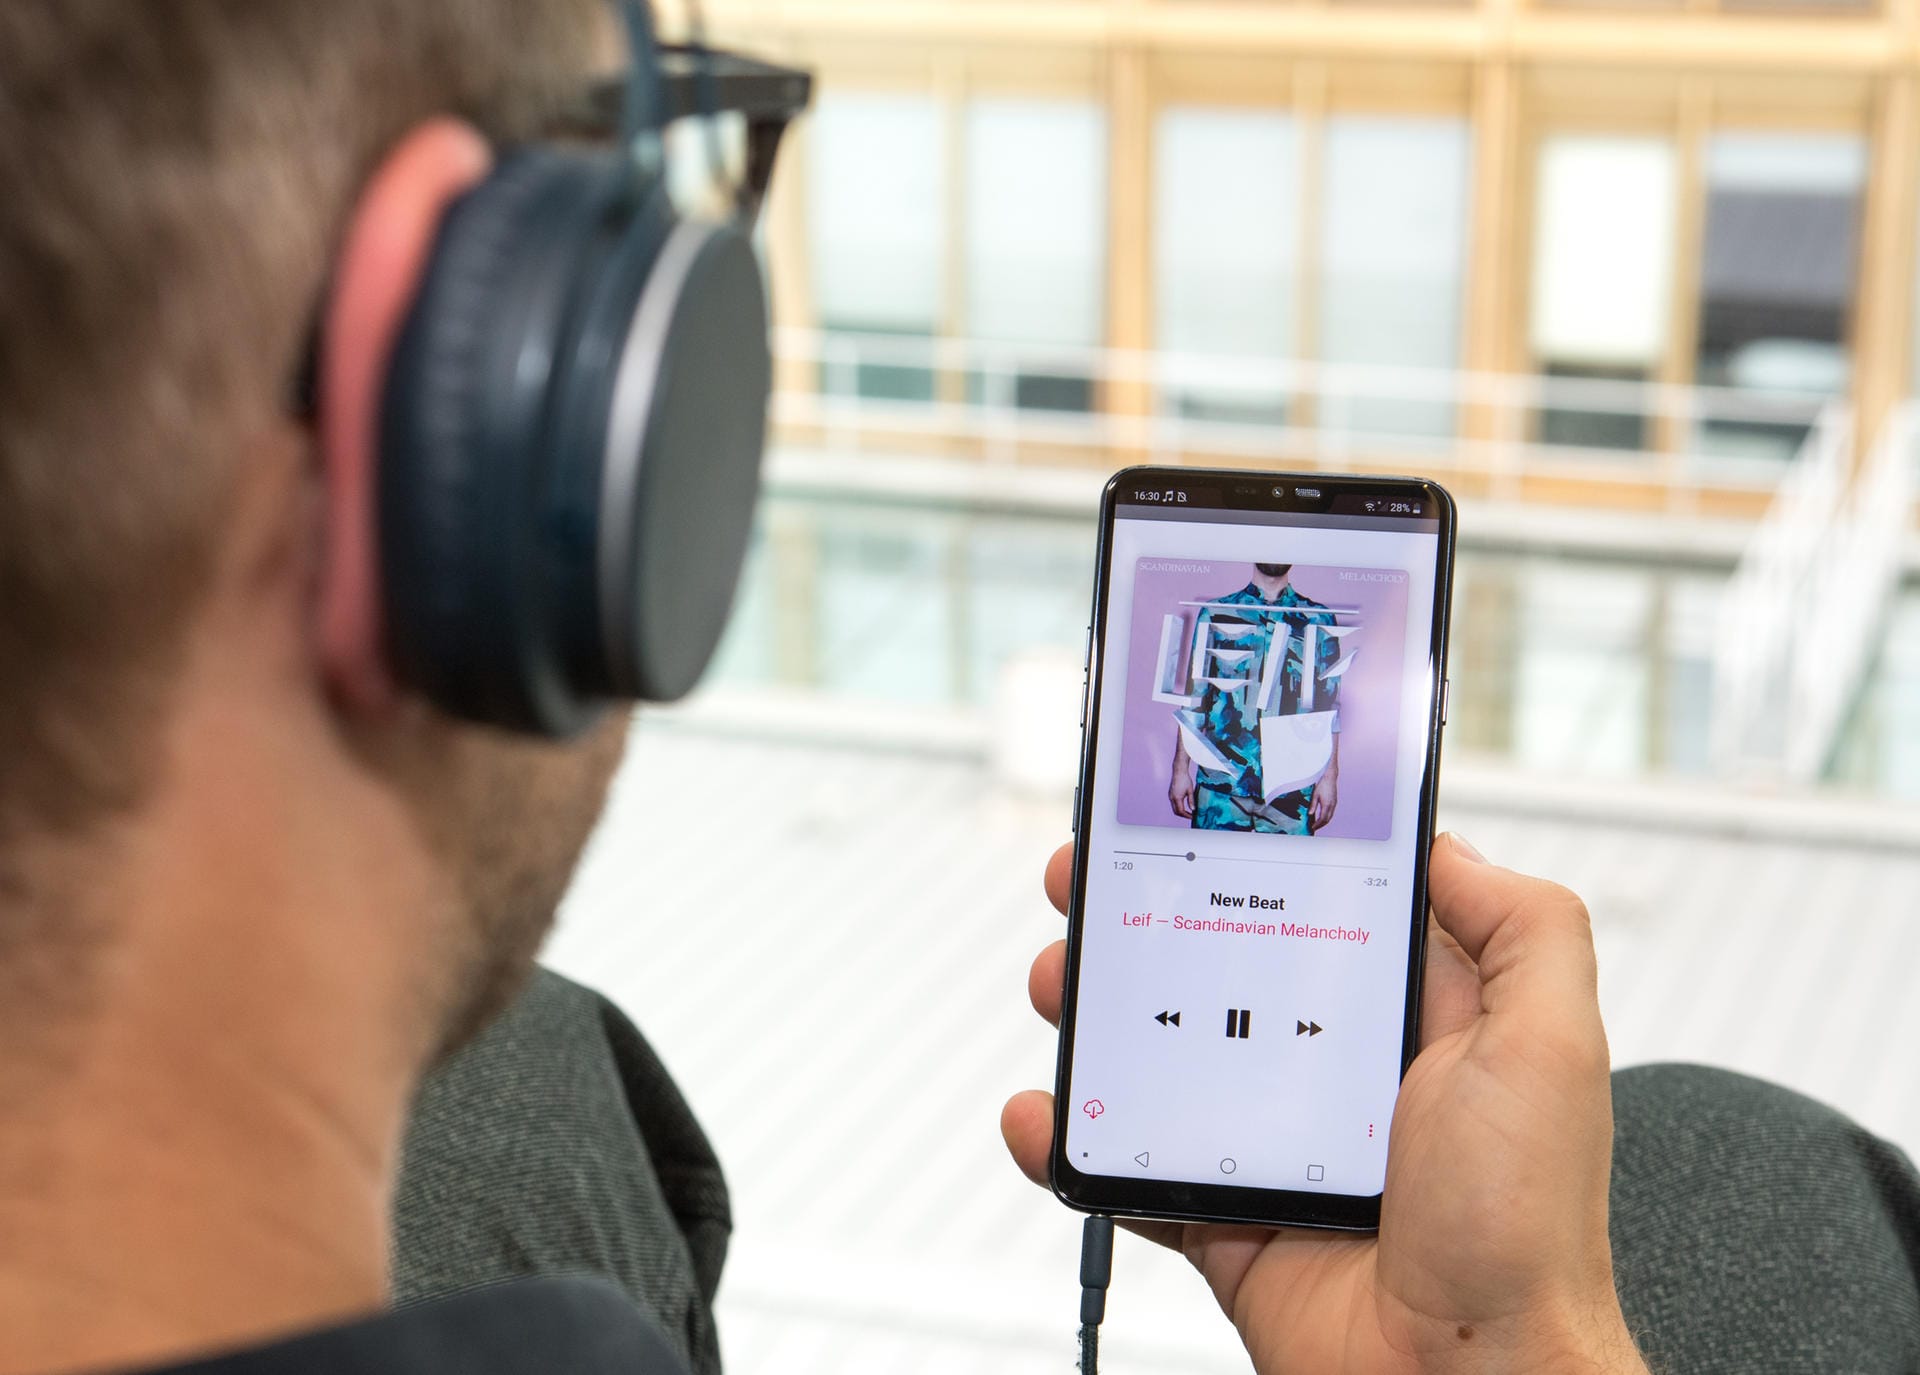 Alleinstellungsmerkmal des LG G7 ThinQ ist ein hochwertertiger Digital-Audio-Wandler. Er ermöglicht zahlreiche Audioeinstellungen und sorgt für besseren Klang als bei manch anderen Smartphones.